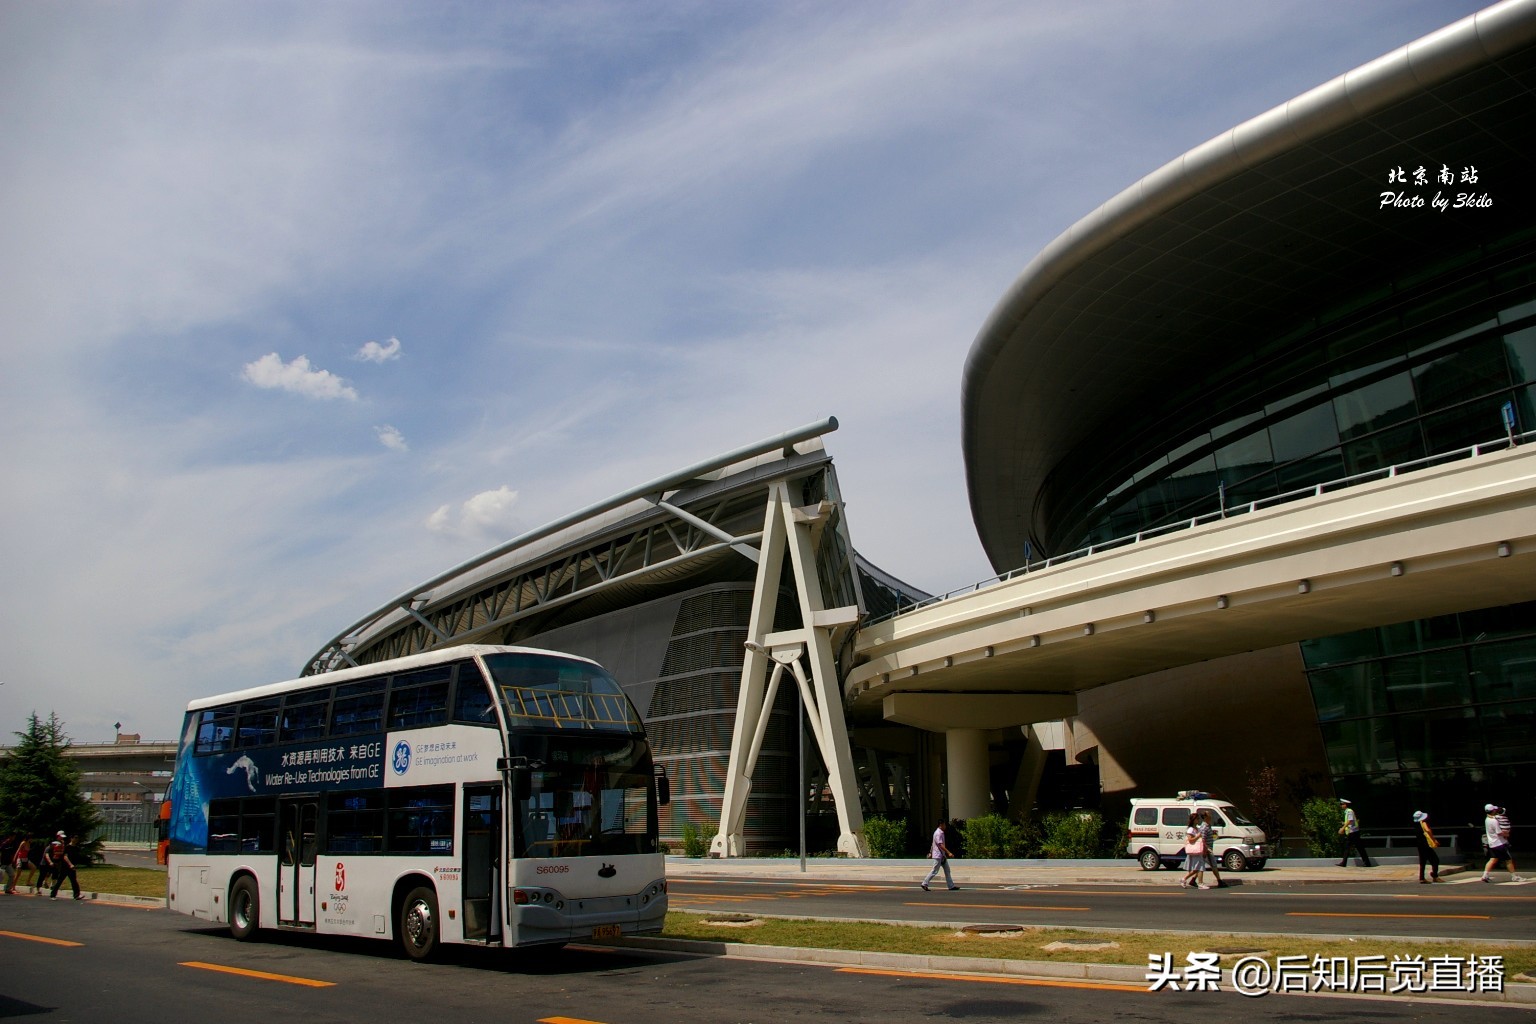 北京南站站房为双曲穹顶外形为椭圆结构 远观似飞碟 精彩照片欣赏